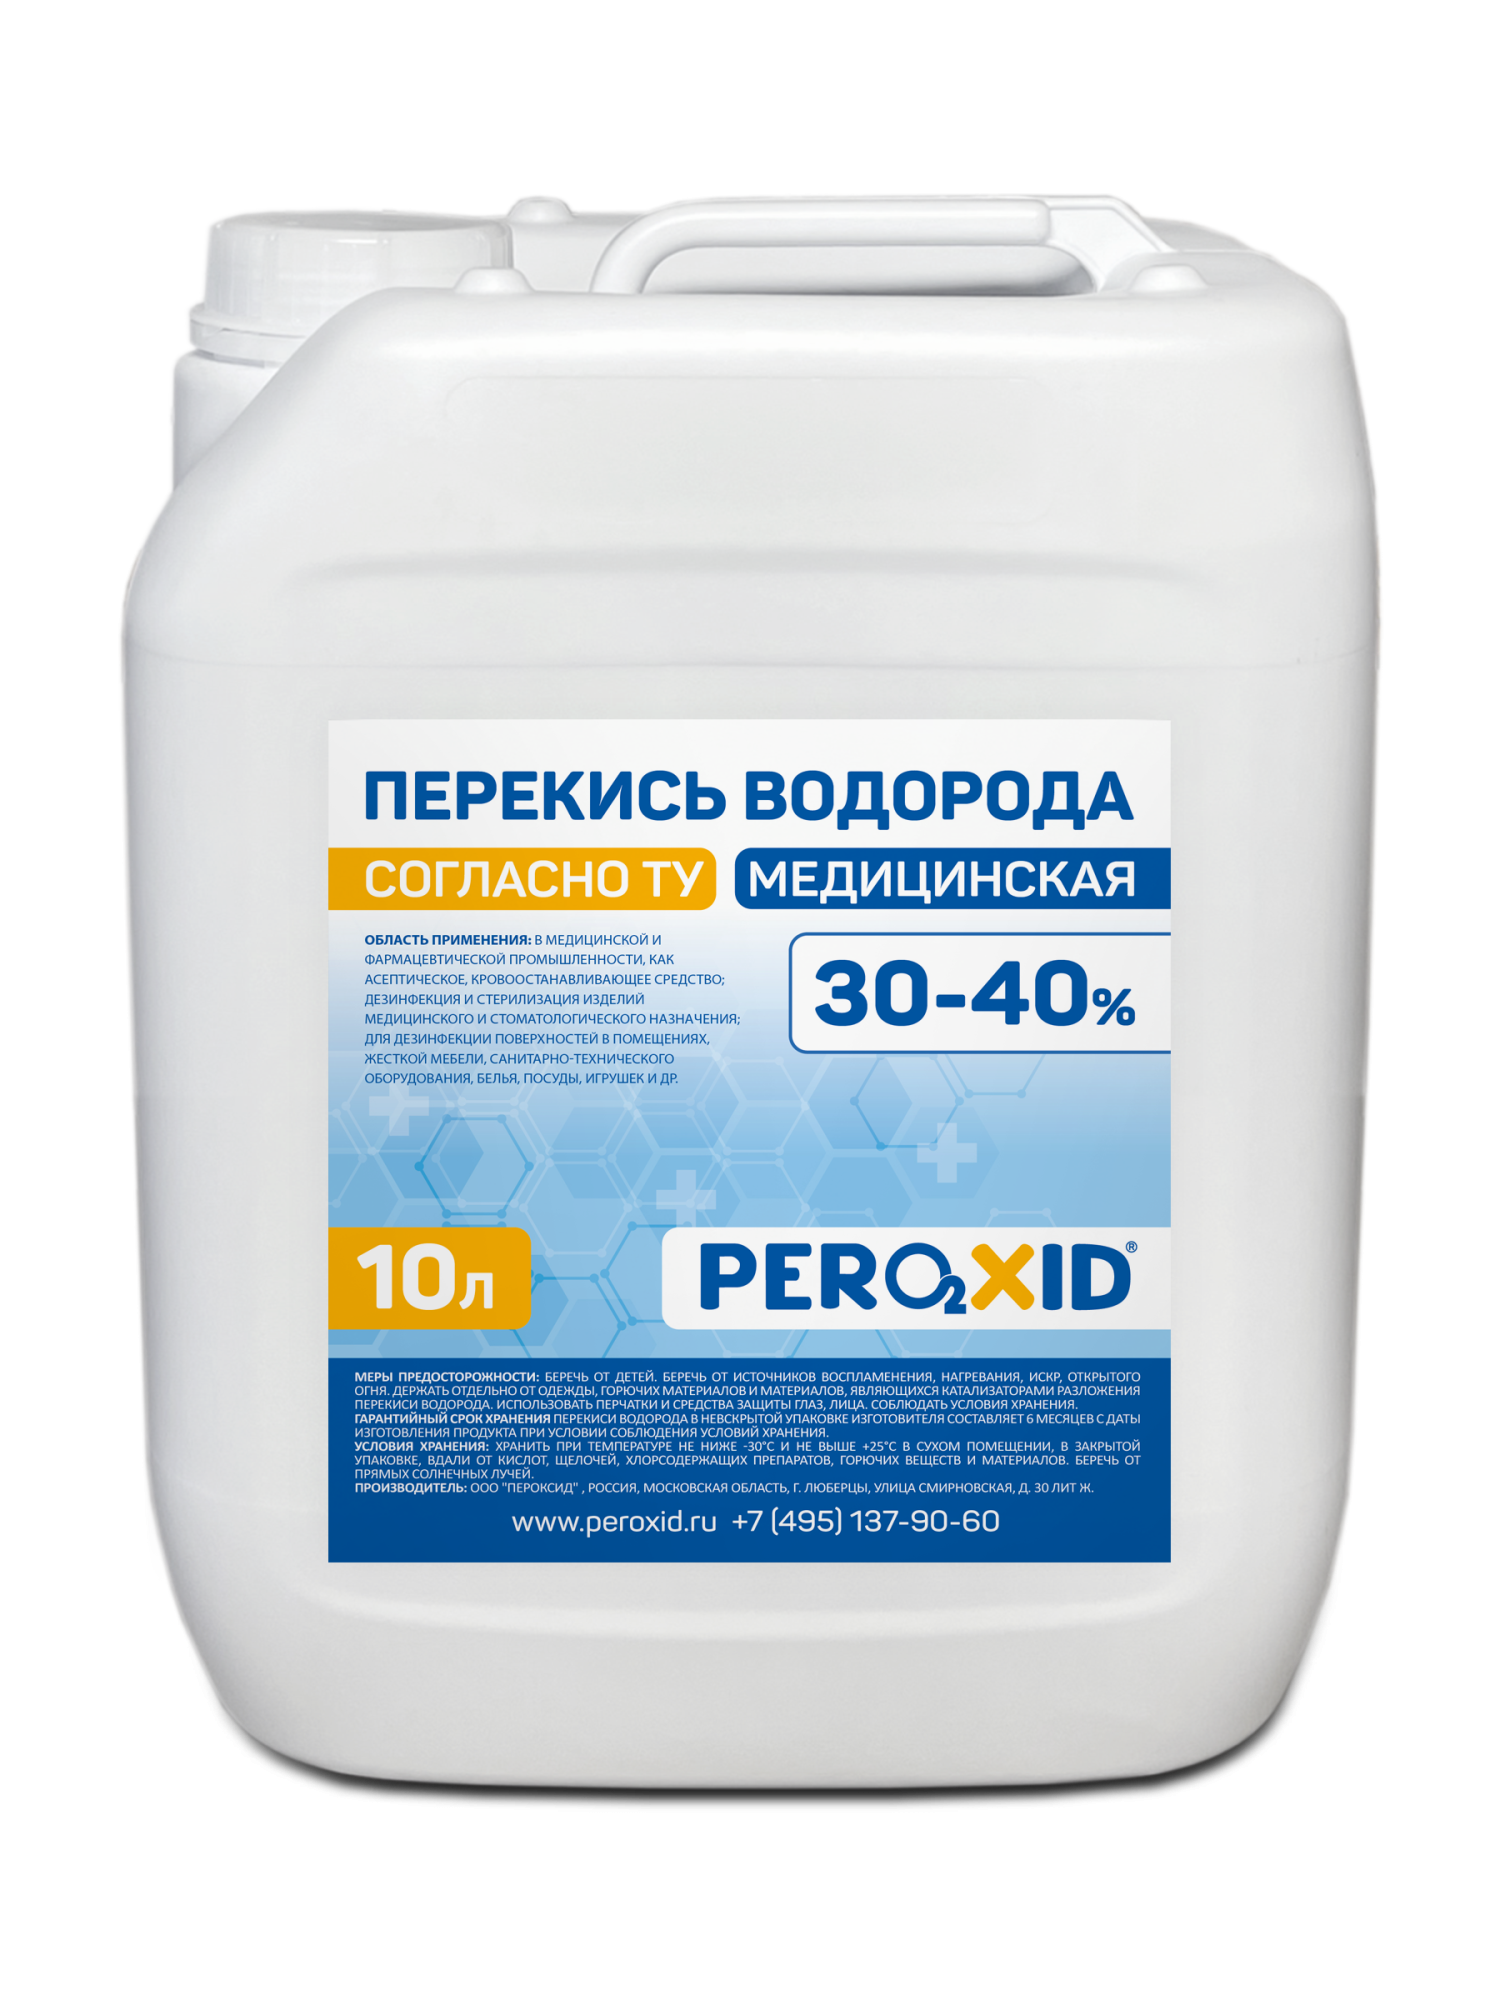 Перекись водорода медицинская PEROXID 30-40% марка  ТУ 2123-001-25665344-2008 10 л/12 кг